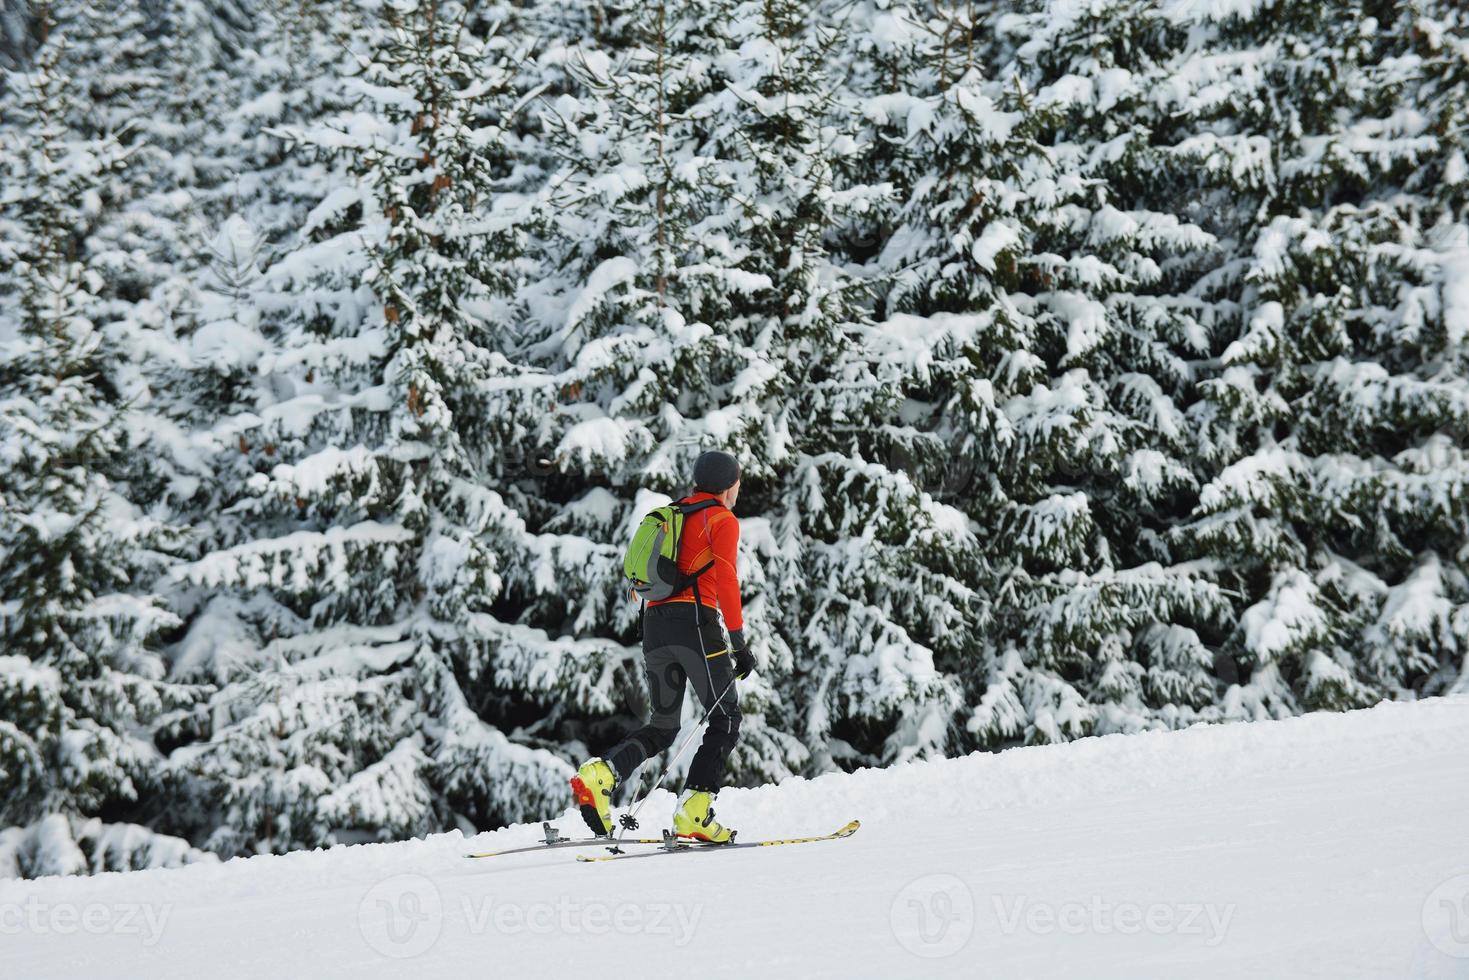 vinter- människor roligt och åka skidor foto